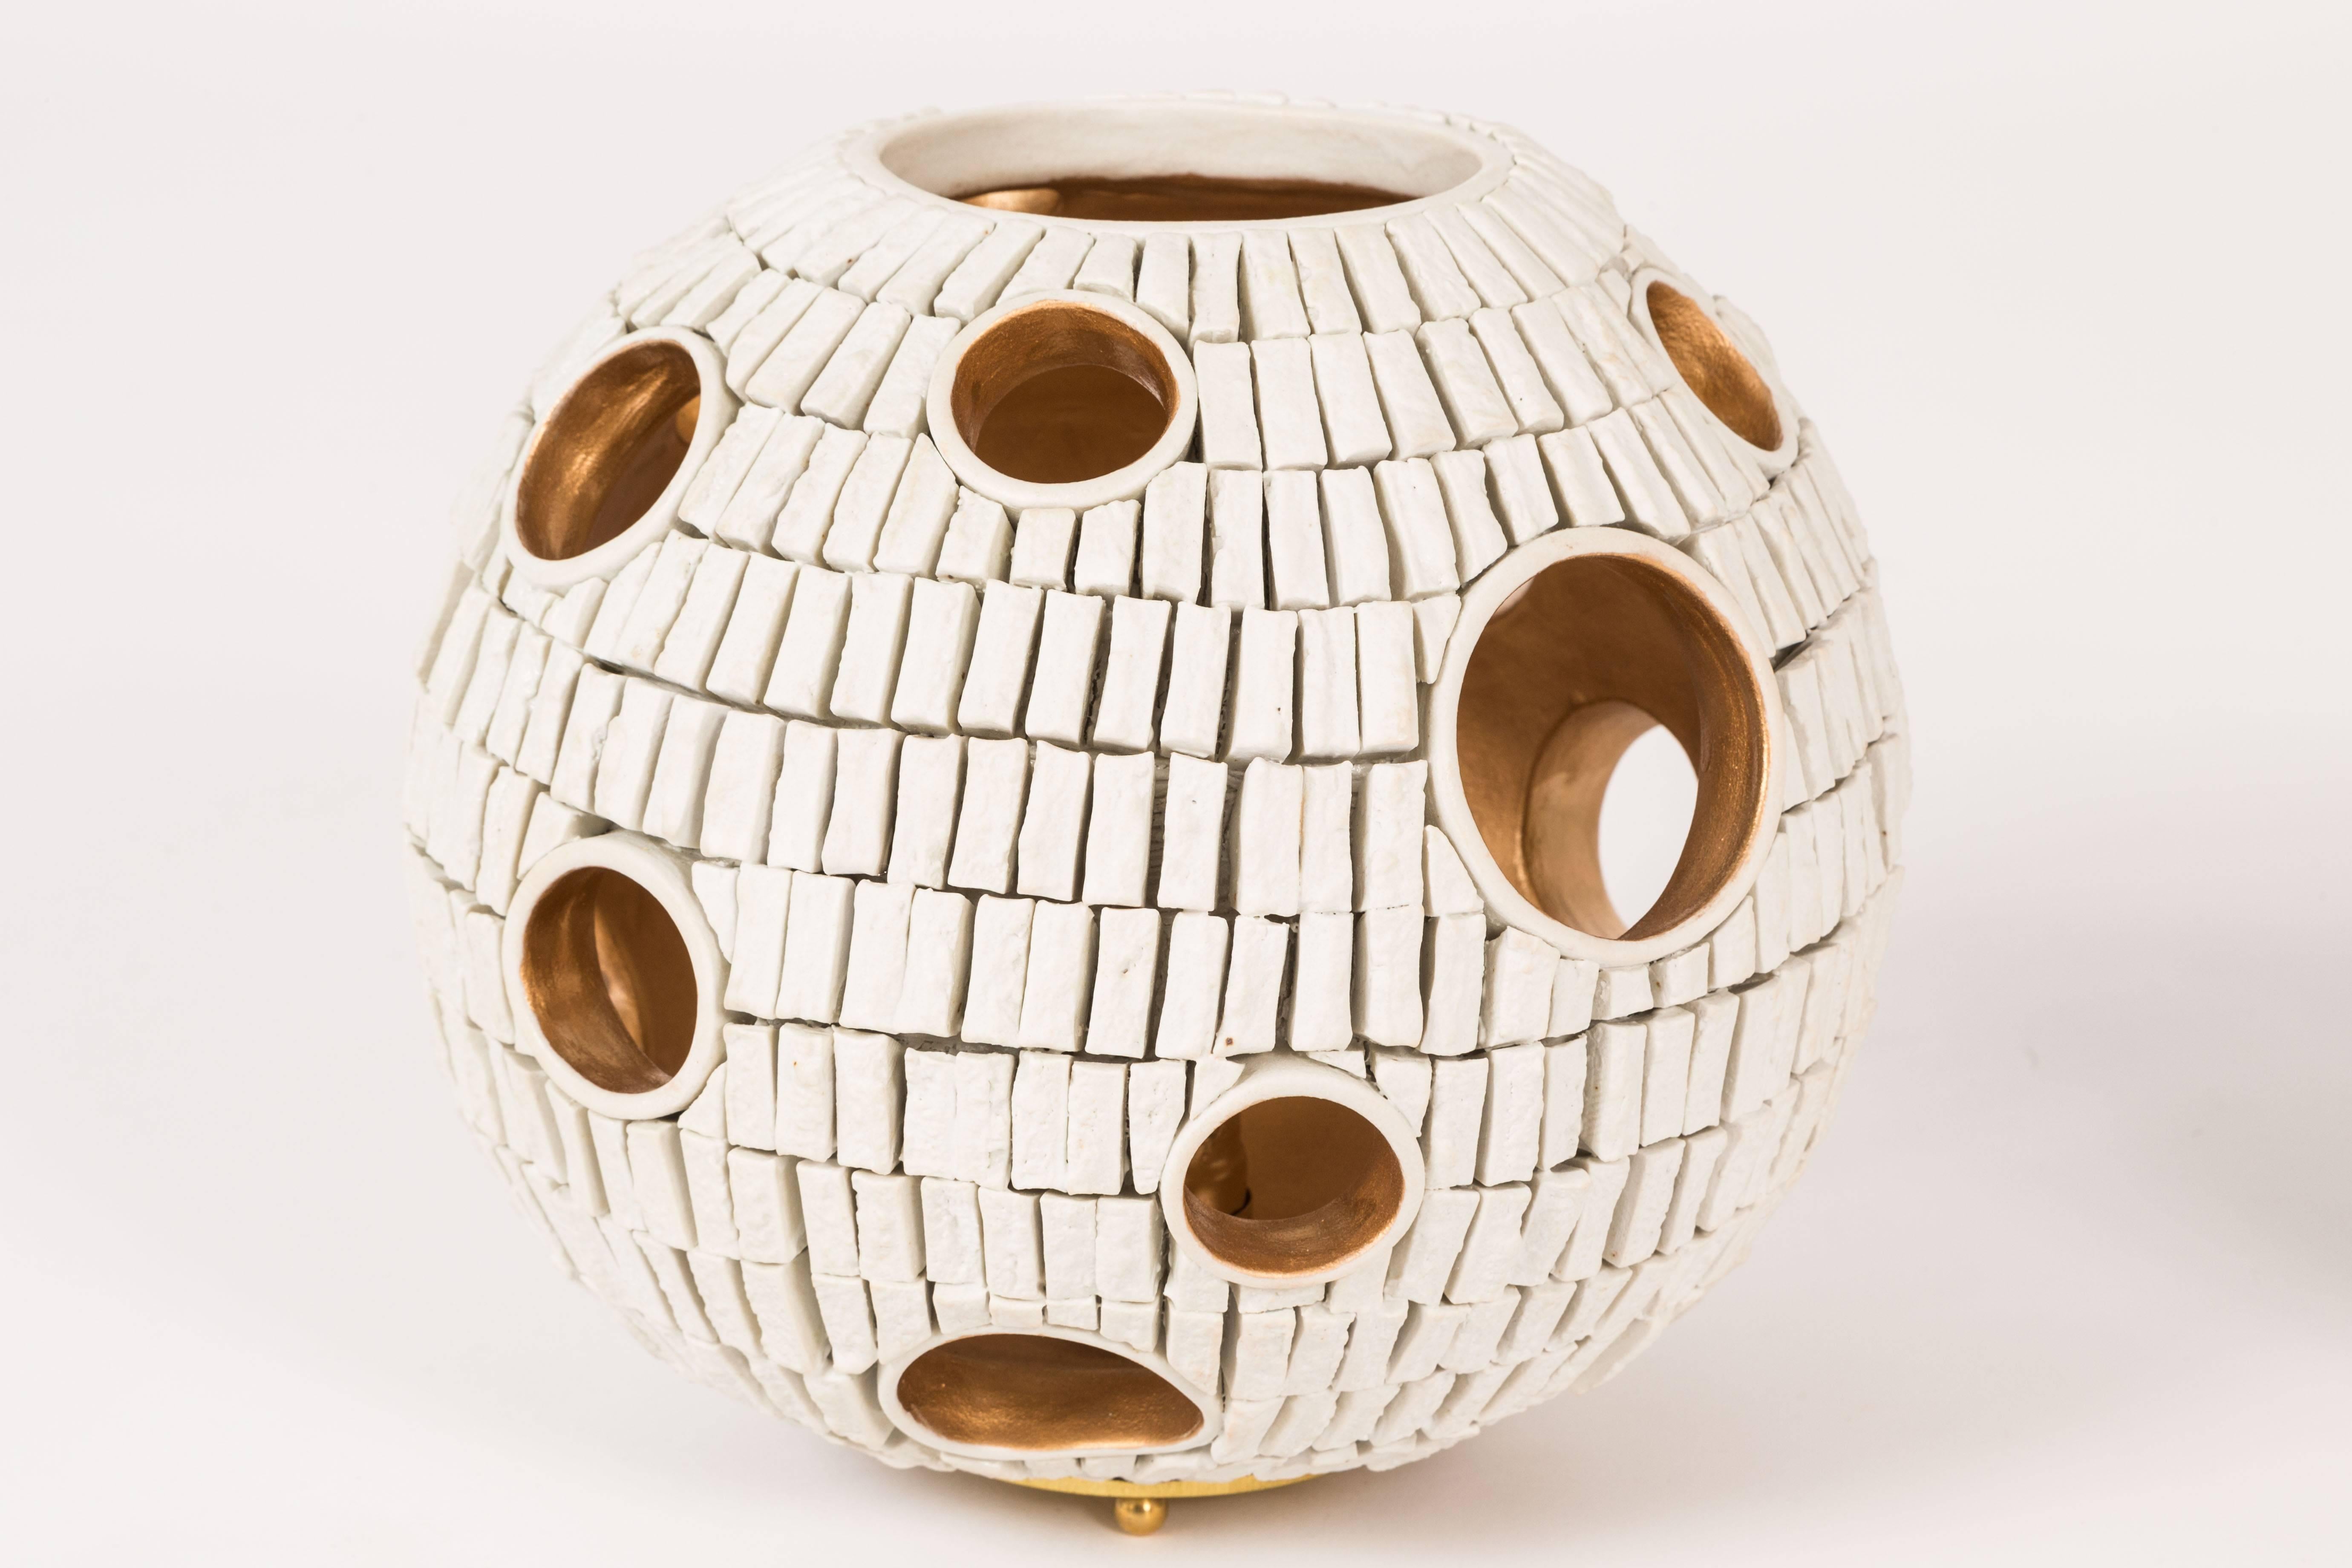 Dies ist unsere neueste Zusammenarbeit mit der Keramikerin Titia Esties aus LA. Diese vollständig von Hand gefertigte Kugel hat etwas Unwirkliches an sich. Aus Hunderten von handgeschnittenen Fliesen zusammengesetzt, lassen die unterschiedlich